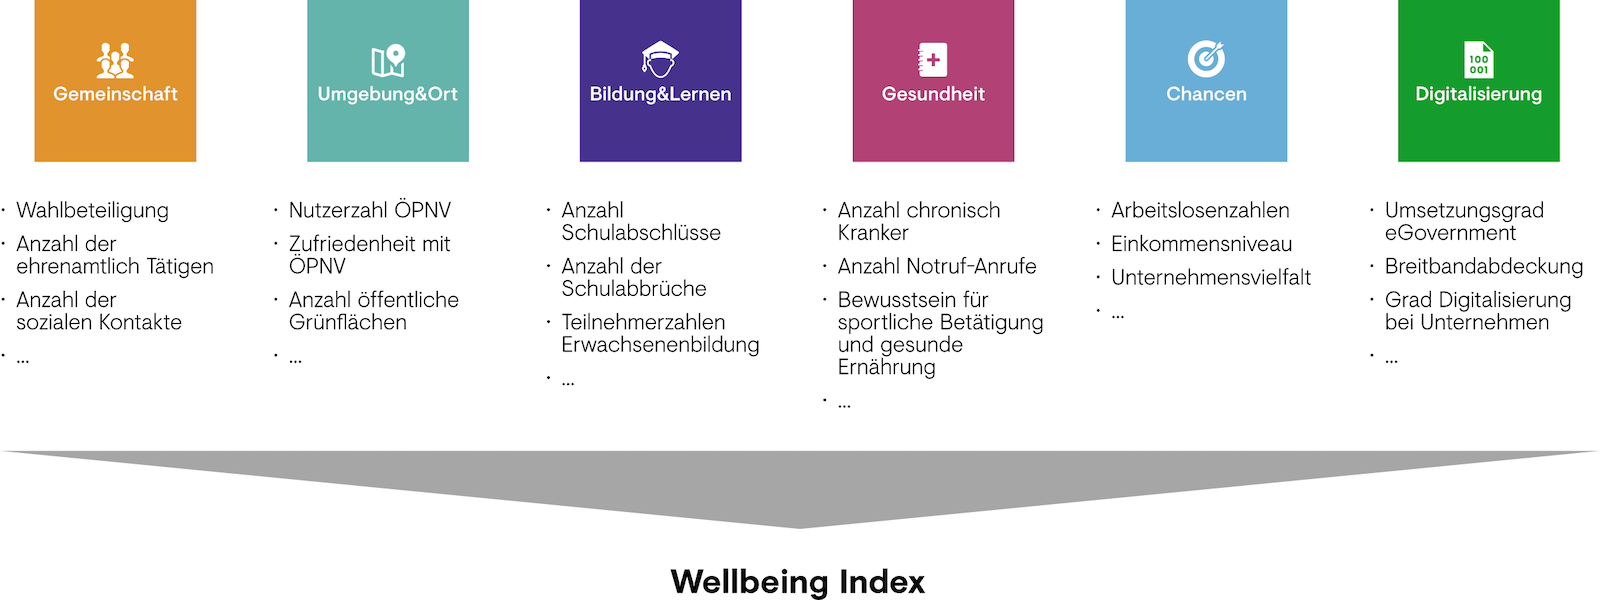 wellbeing index für deutschland